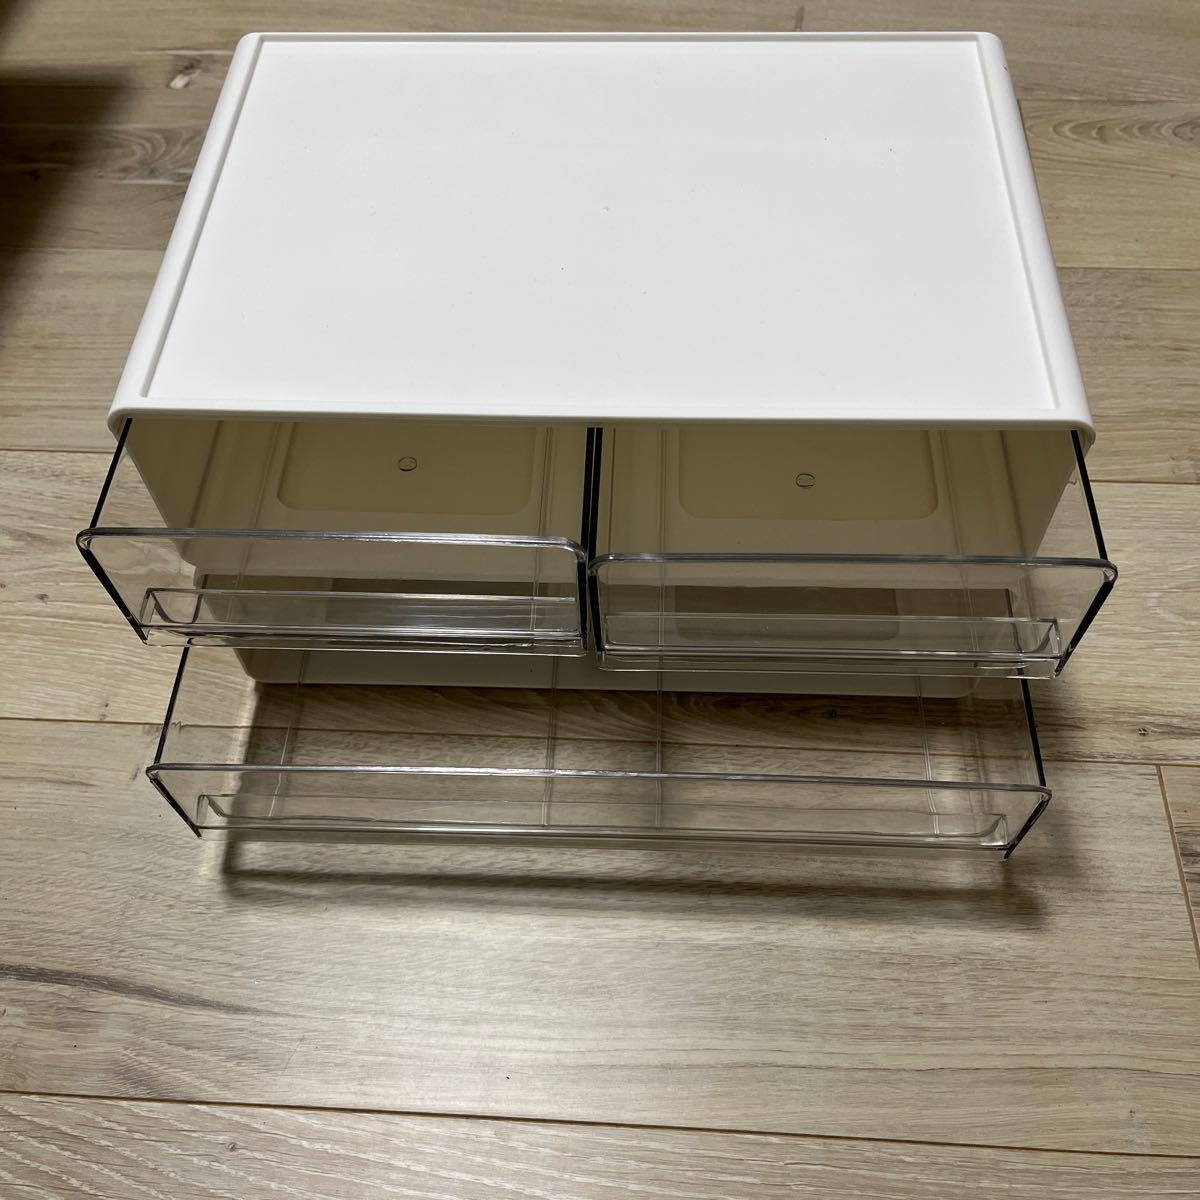 レターケース 卓上収納ケース デスクトレー 引き出し 透明 小物 卓上 横型 白 おしゃれ 組み合わせ自由 小物整理収納 ファイルフォルダー _画像6